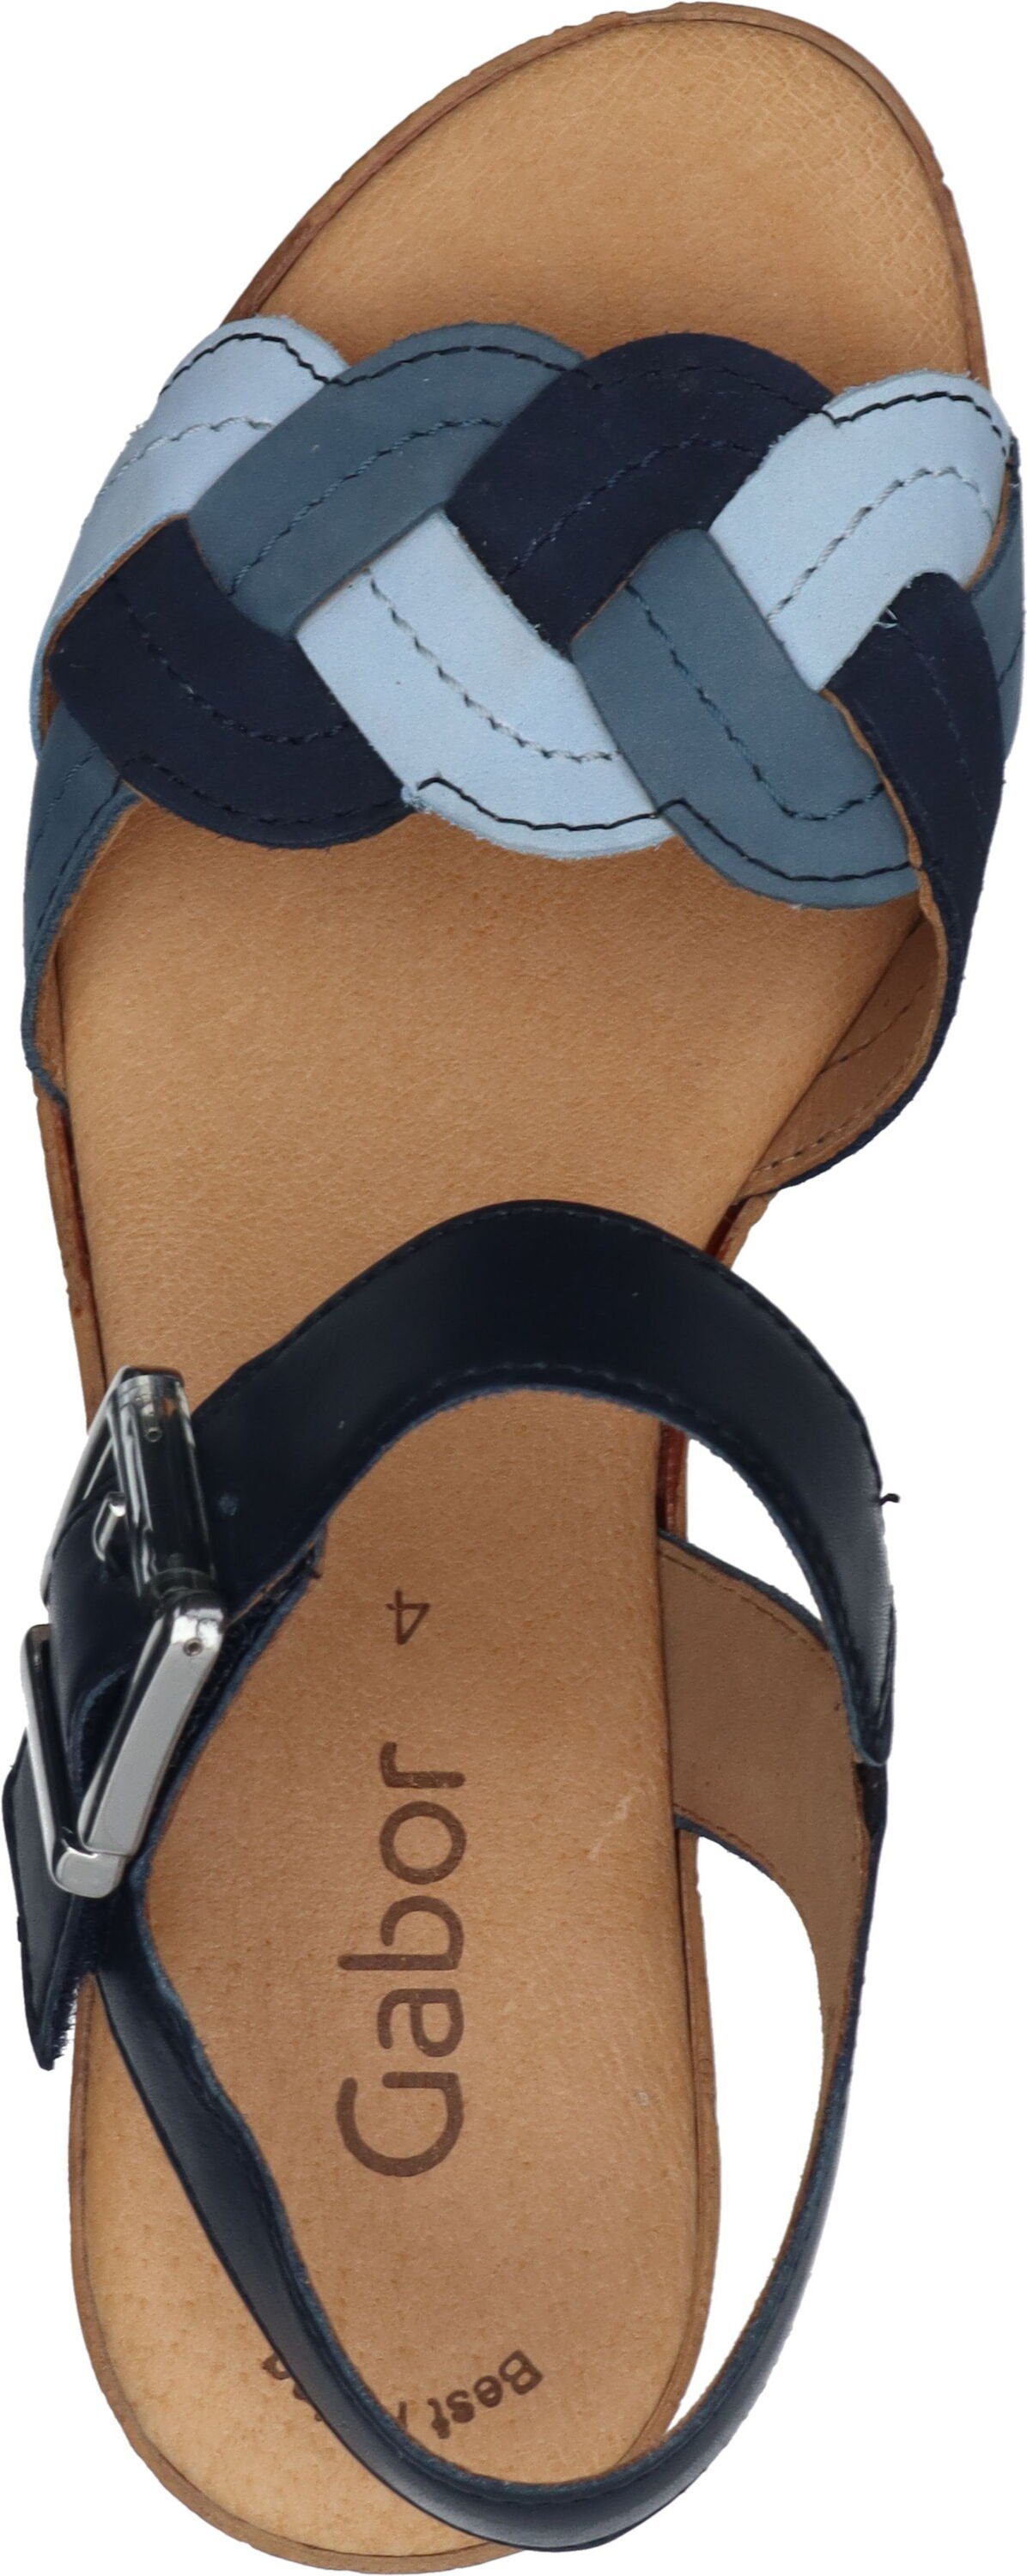 Gabor blau aus Sandalette Sandaletten echtem Leder kombi